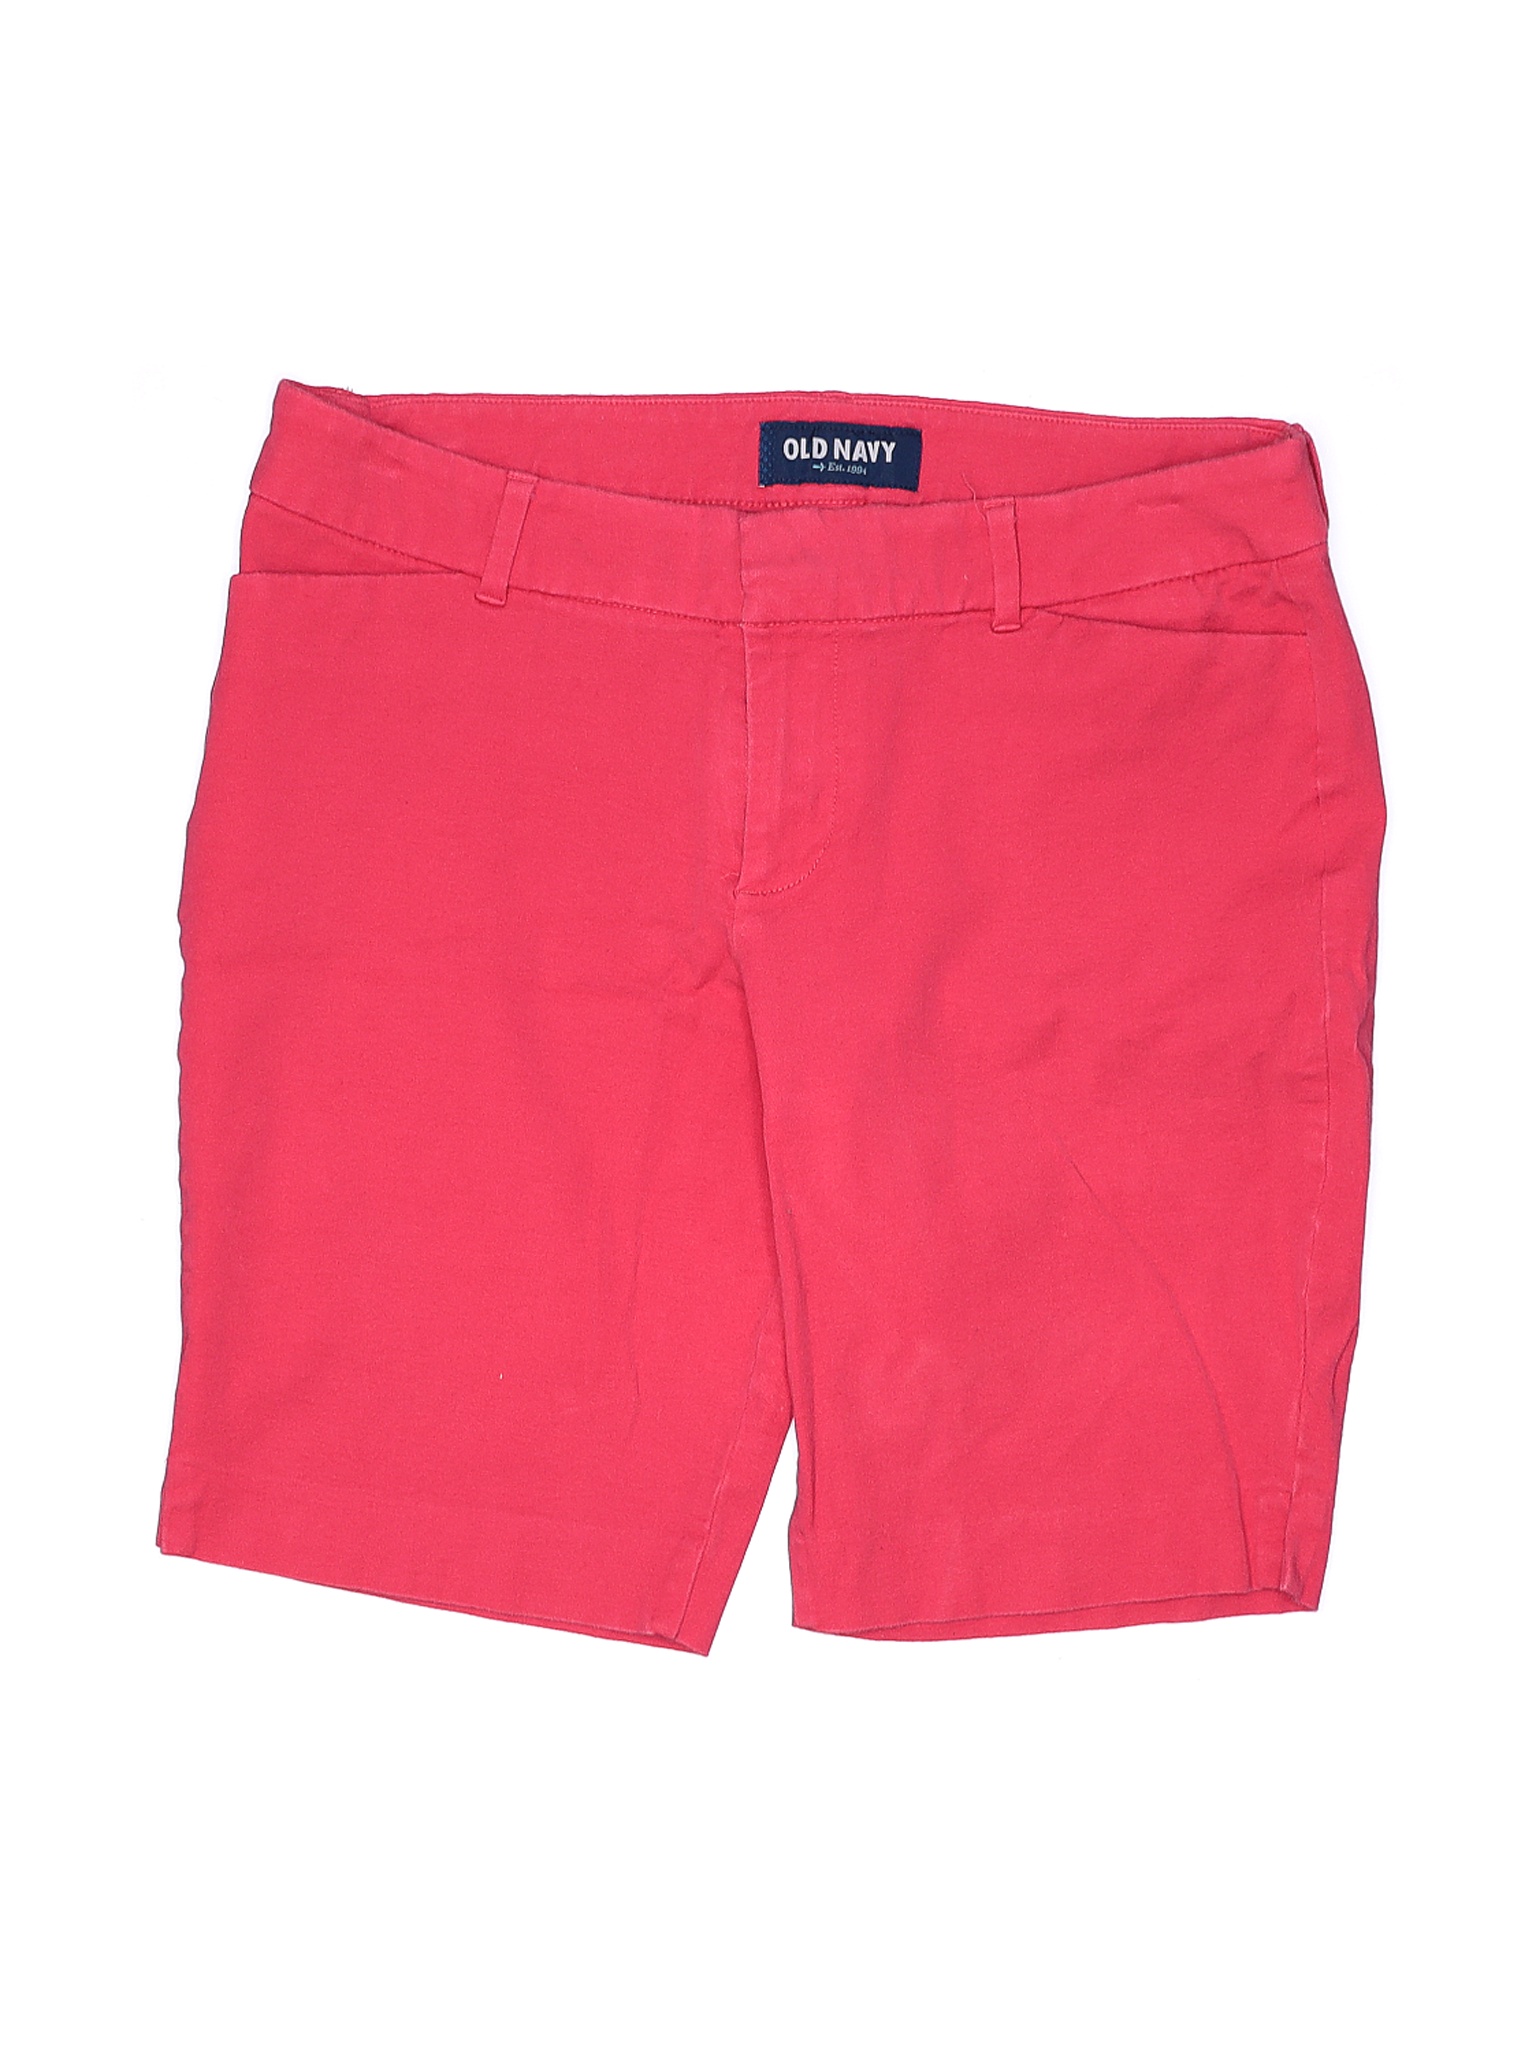 Old Navy Women Pink Shorts 10 | eBay